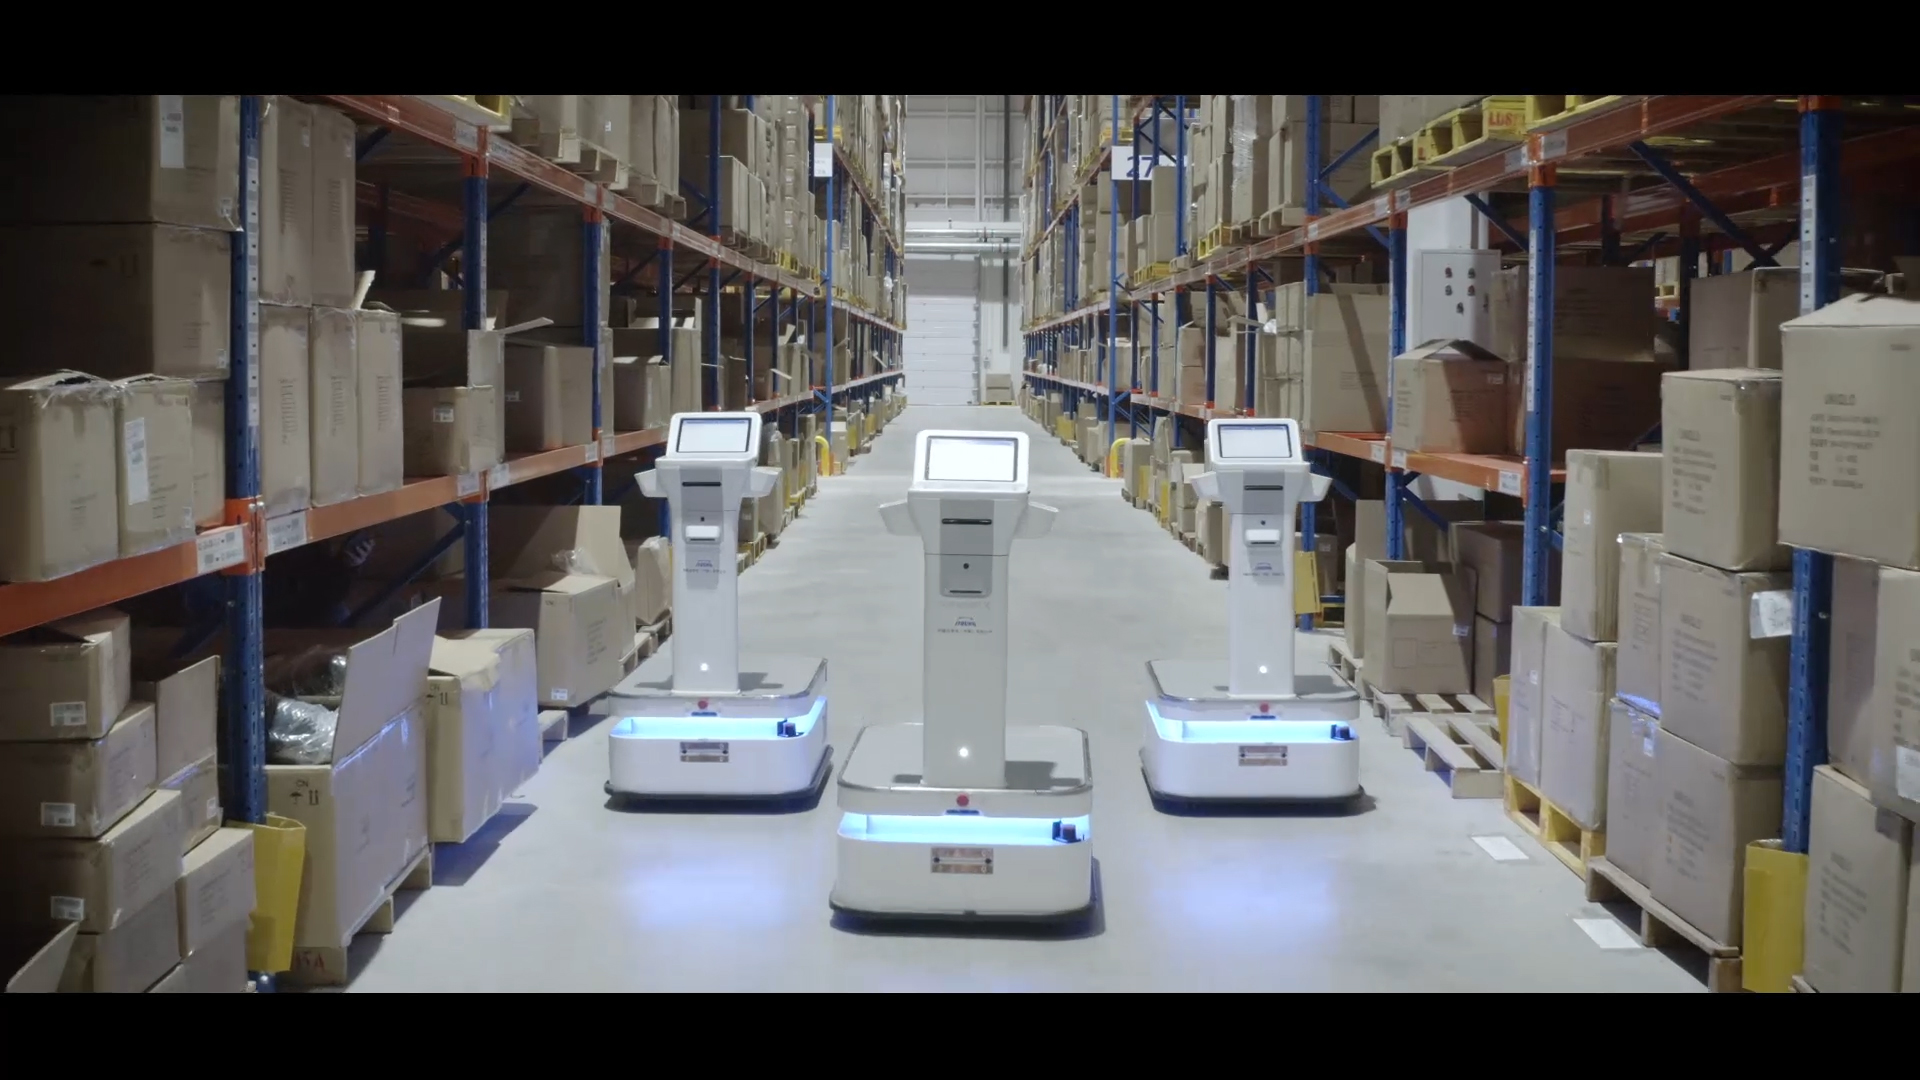 Fleets of Autonomous Mobile Robots